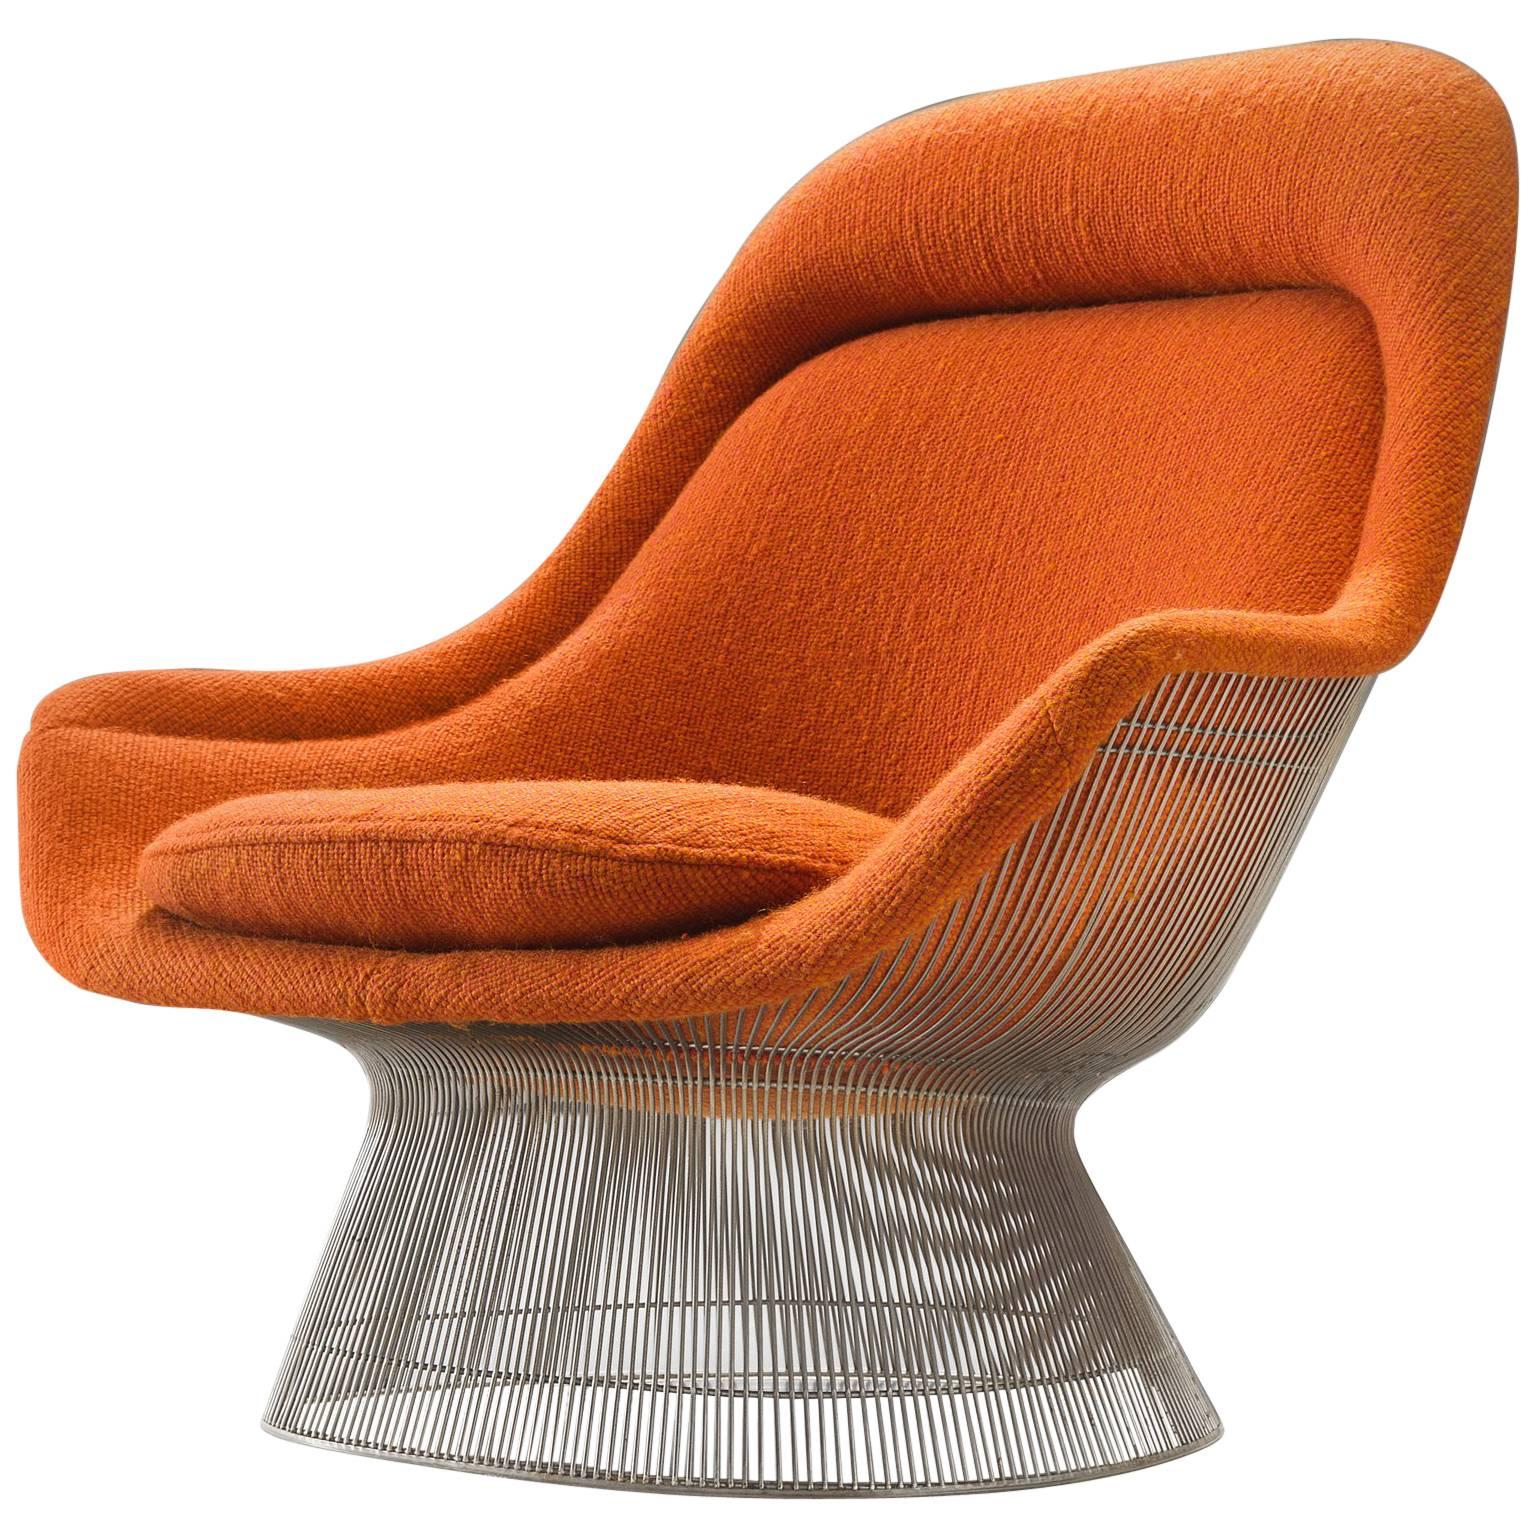 Warren Platner Easy Chair in Original Orange Fabric